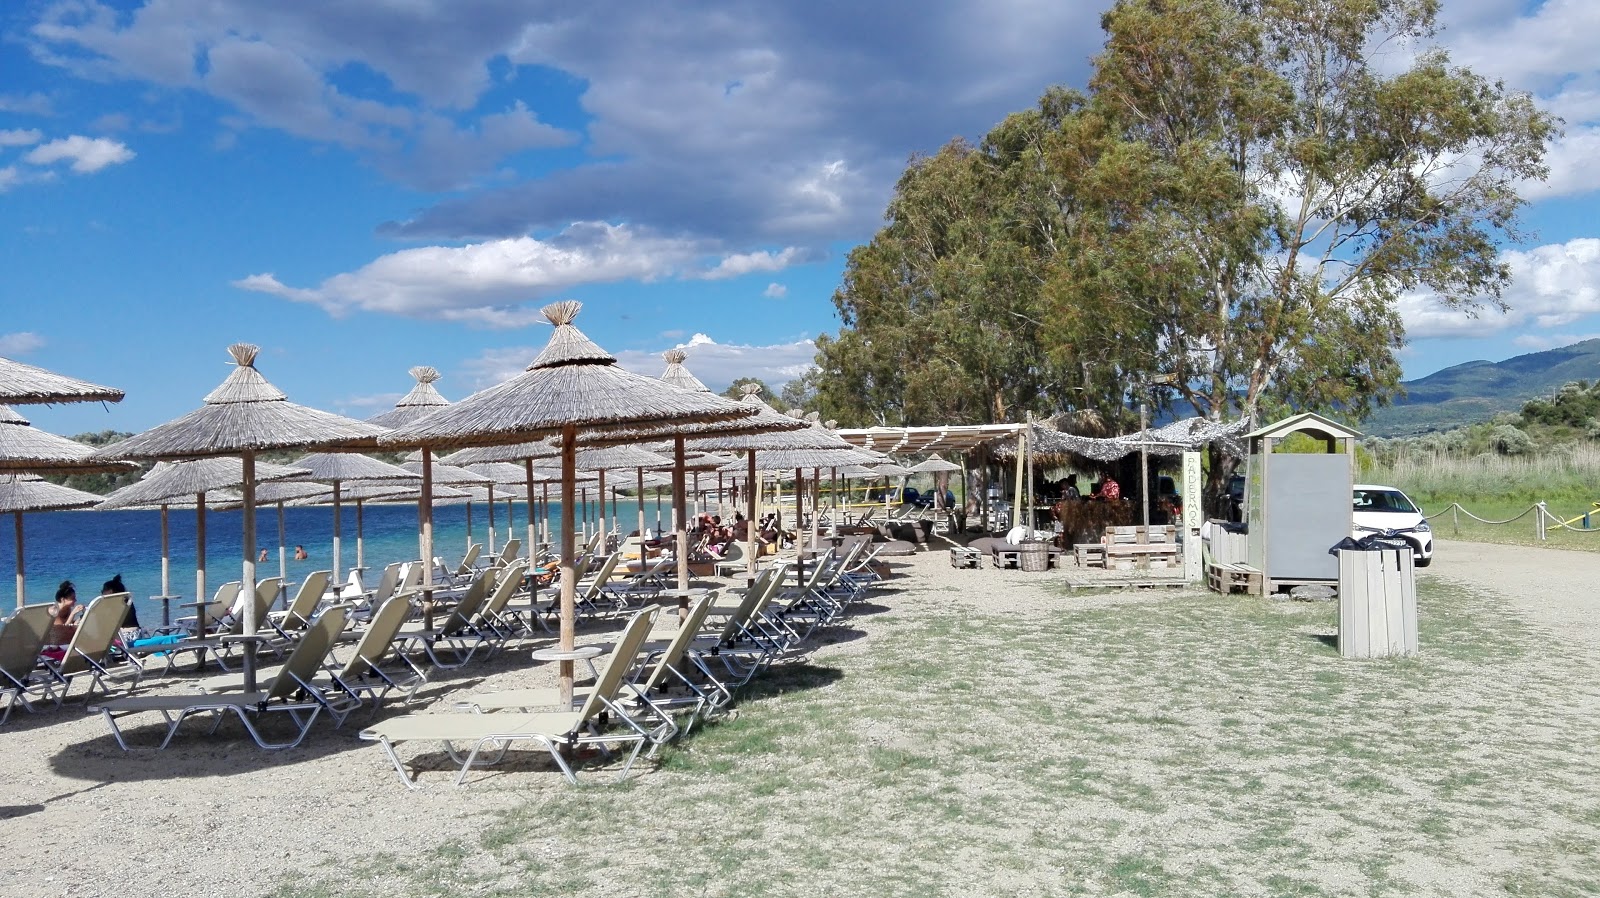 Foto di Pantermos beach ubicato in zona naturale